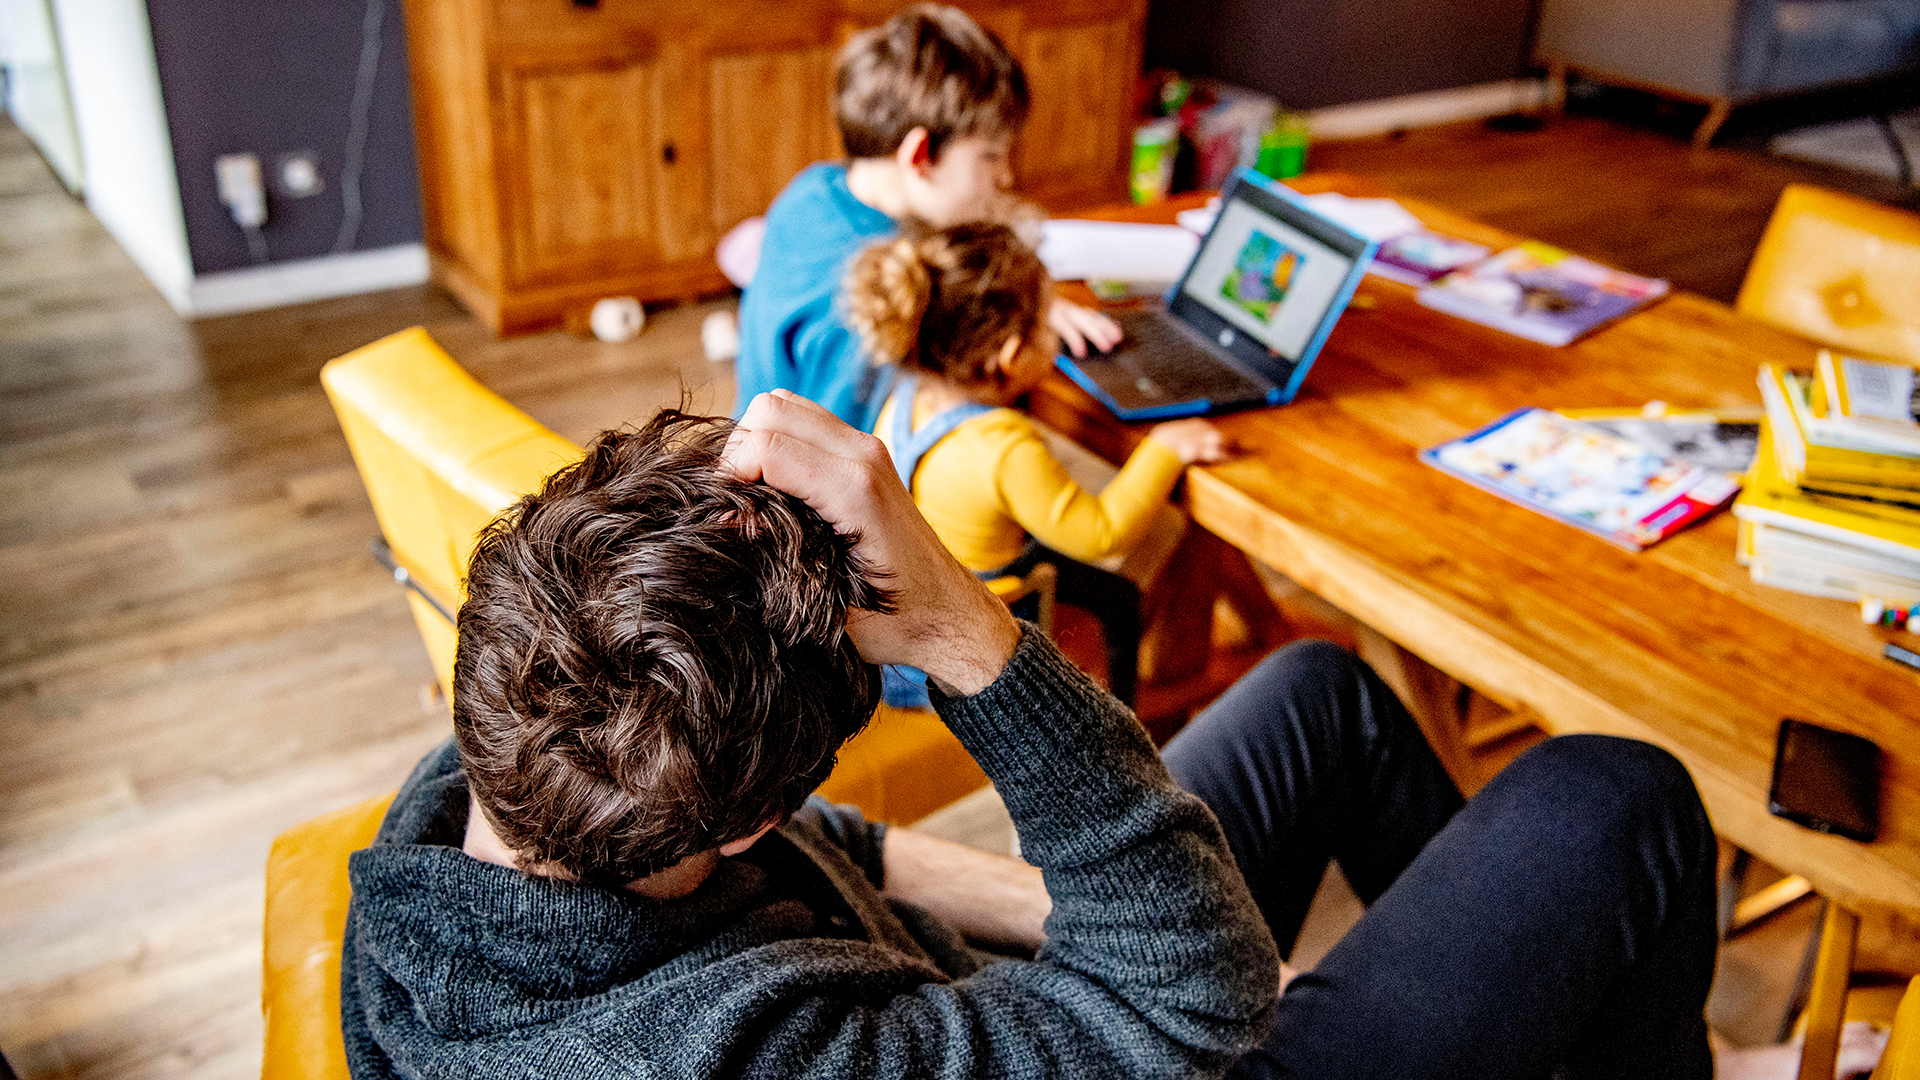 Zwei Kinder vor einem Laptop | picture alliance / ROBIN UTRECHT